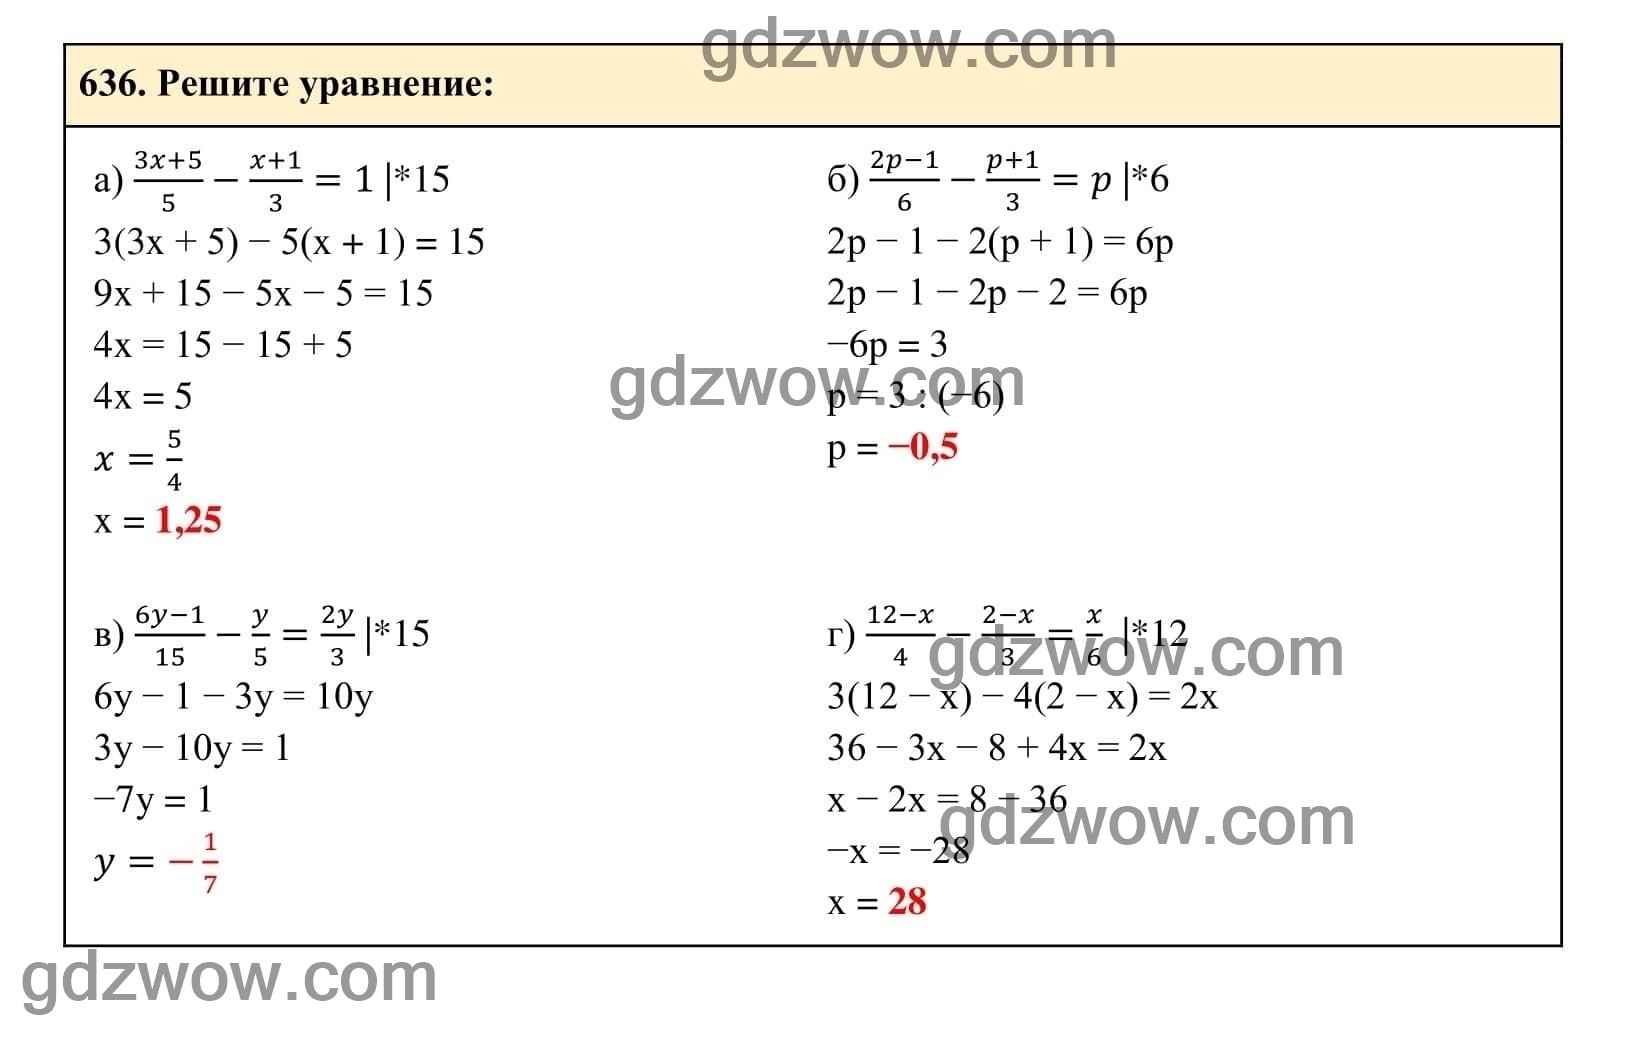 Упражнение 636 - ГДЗ по Алгебре 7 класс Учебник Макарычев (решебник) - GDZwow